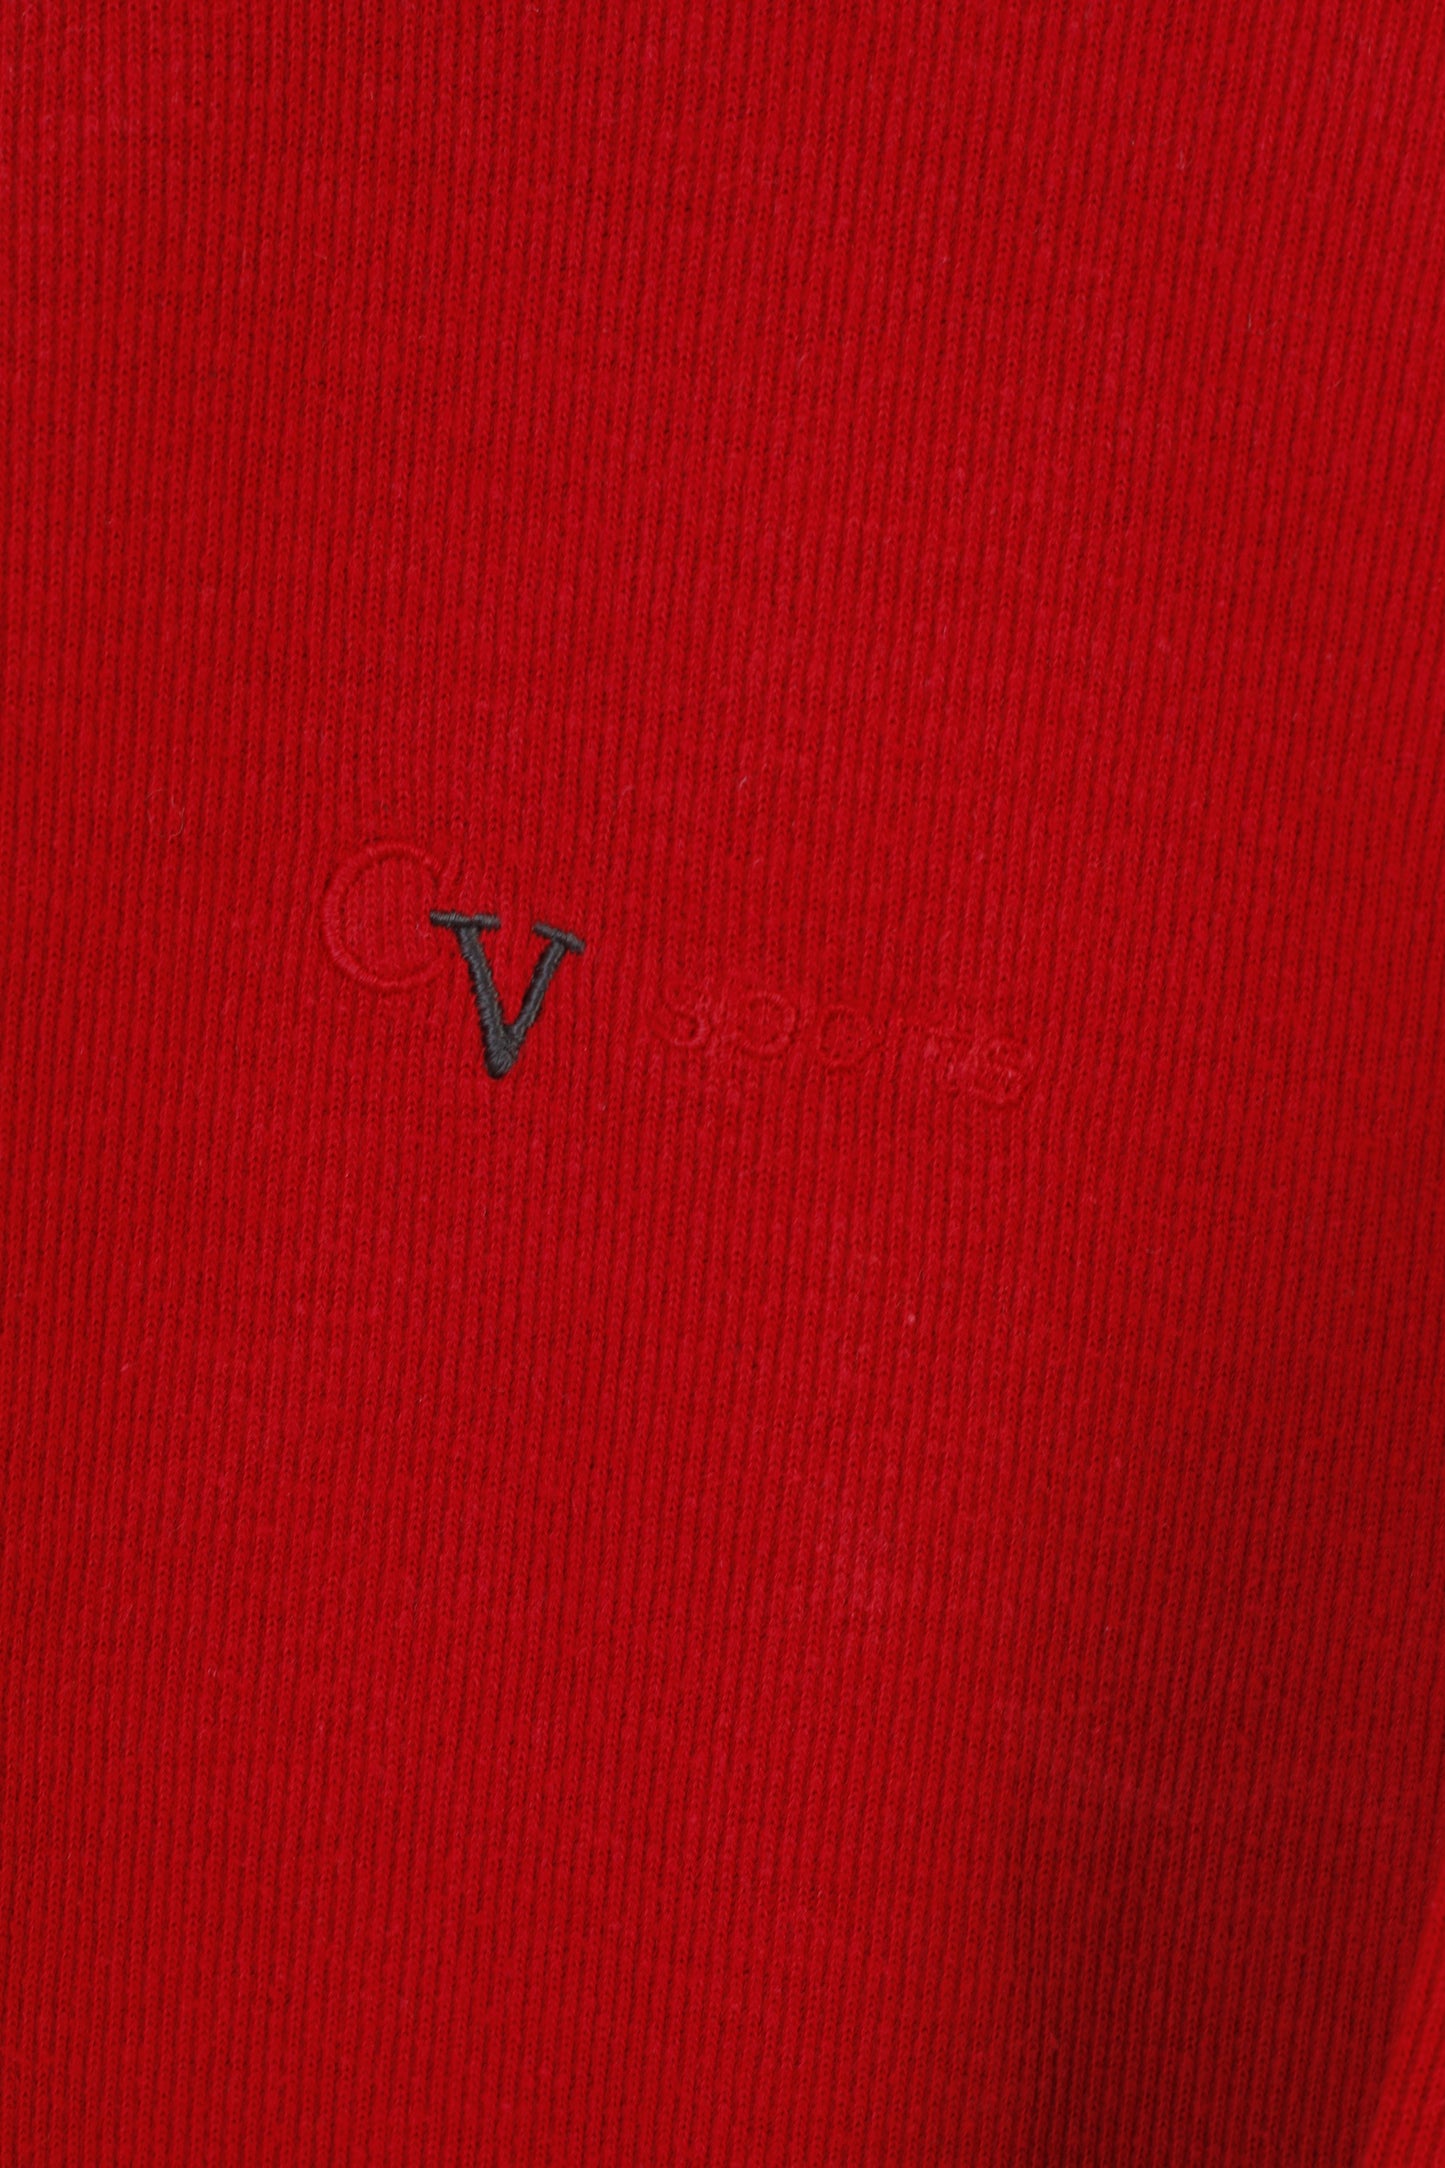 Color Ville Hommes XL Jumper Rouge Coton Pull Zip Neck Vintage Sports Top 